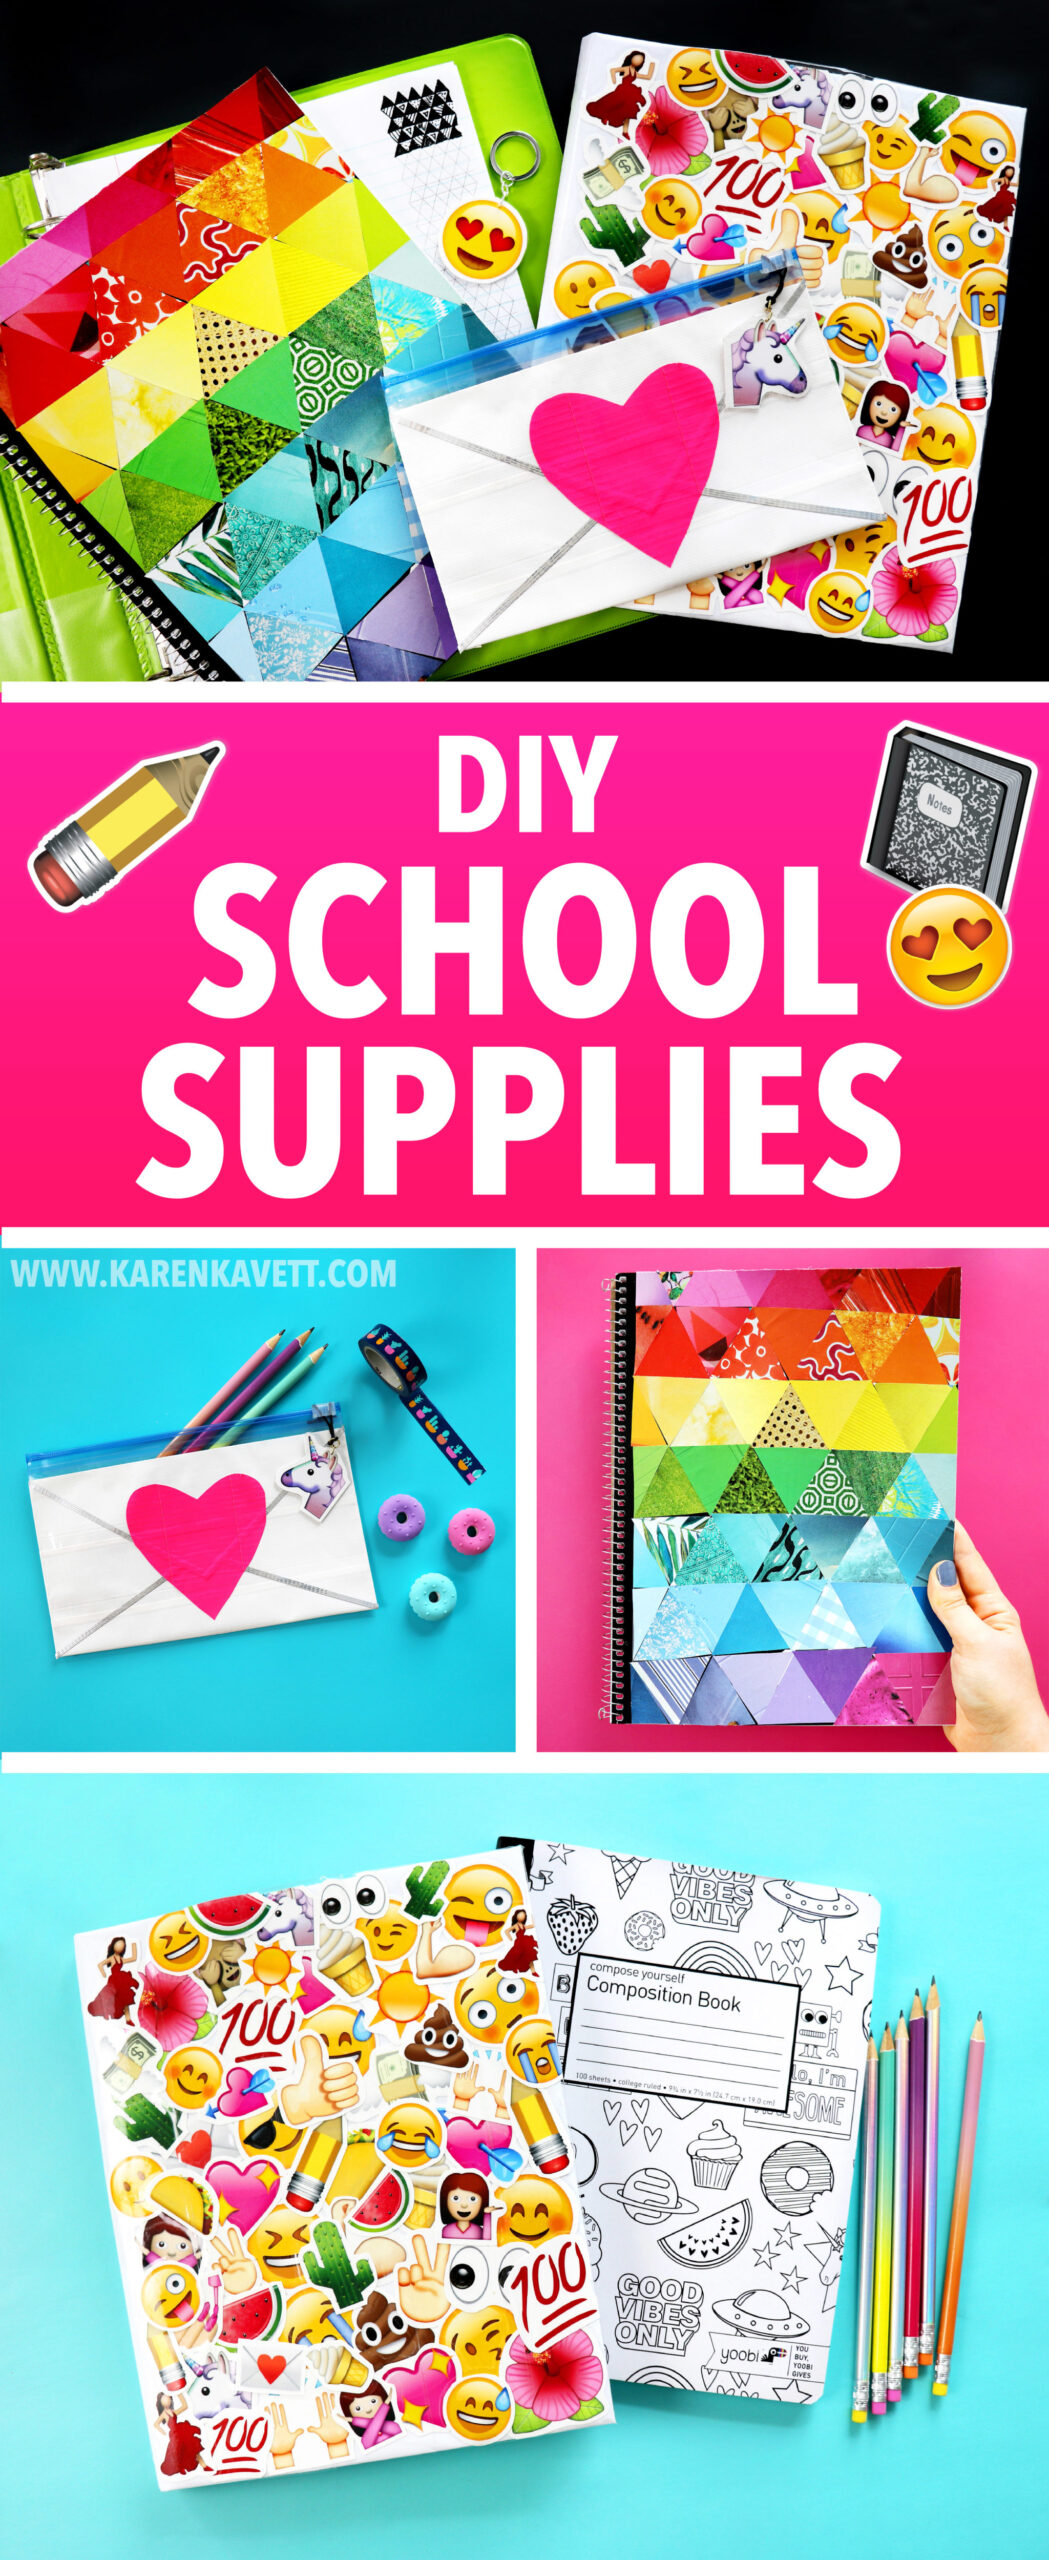 Diy School Supplies To Make When You Re Bored Karen Kavett